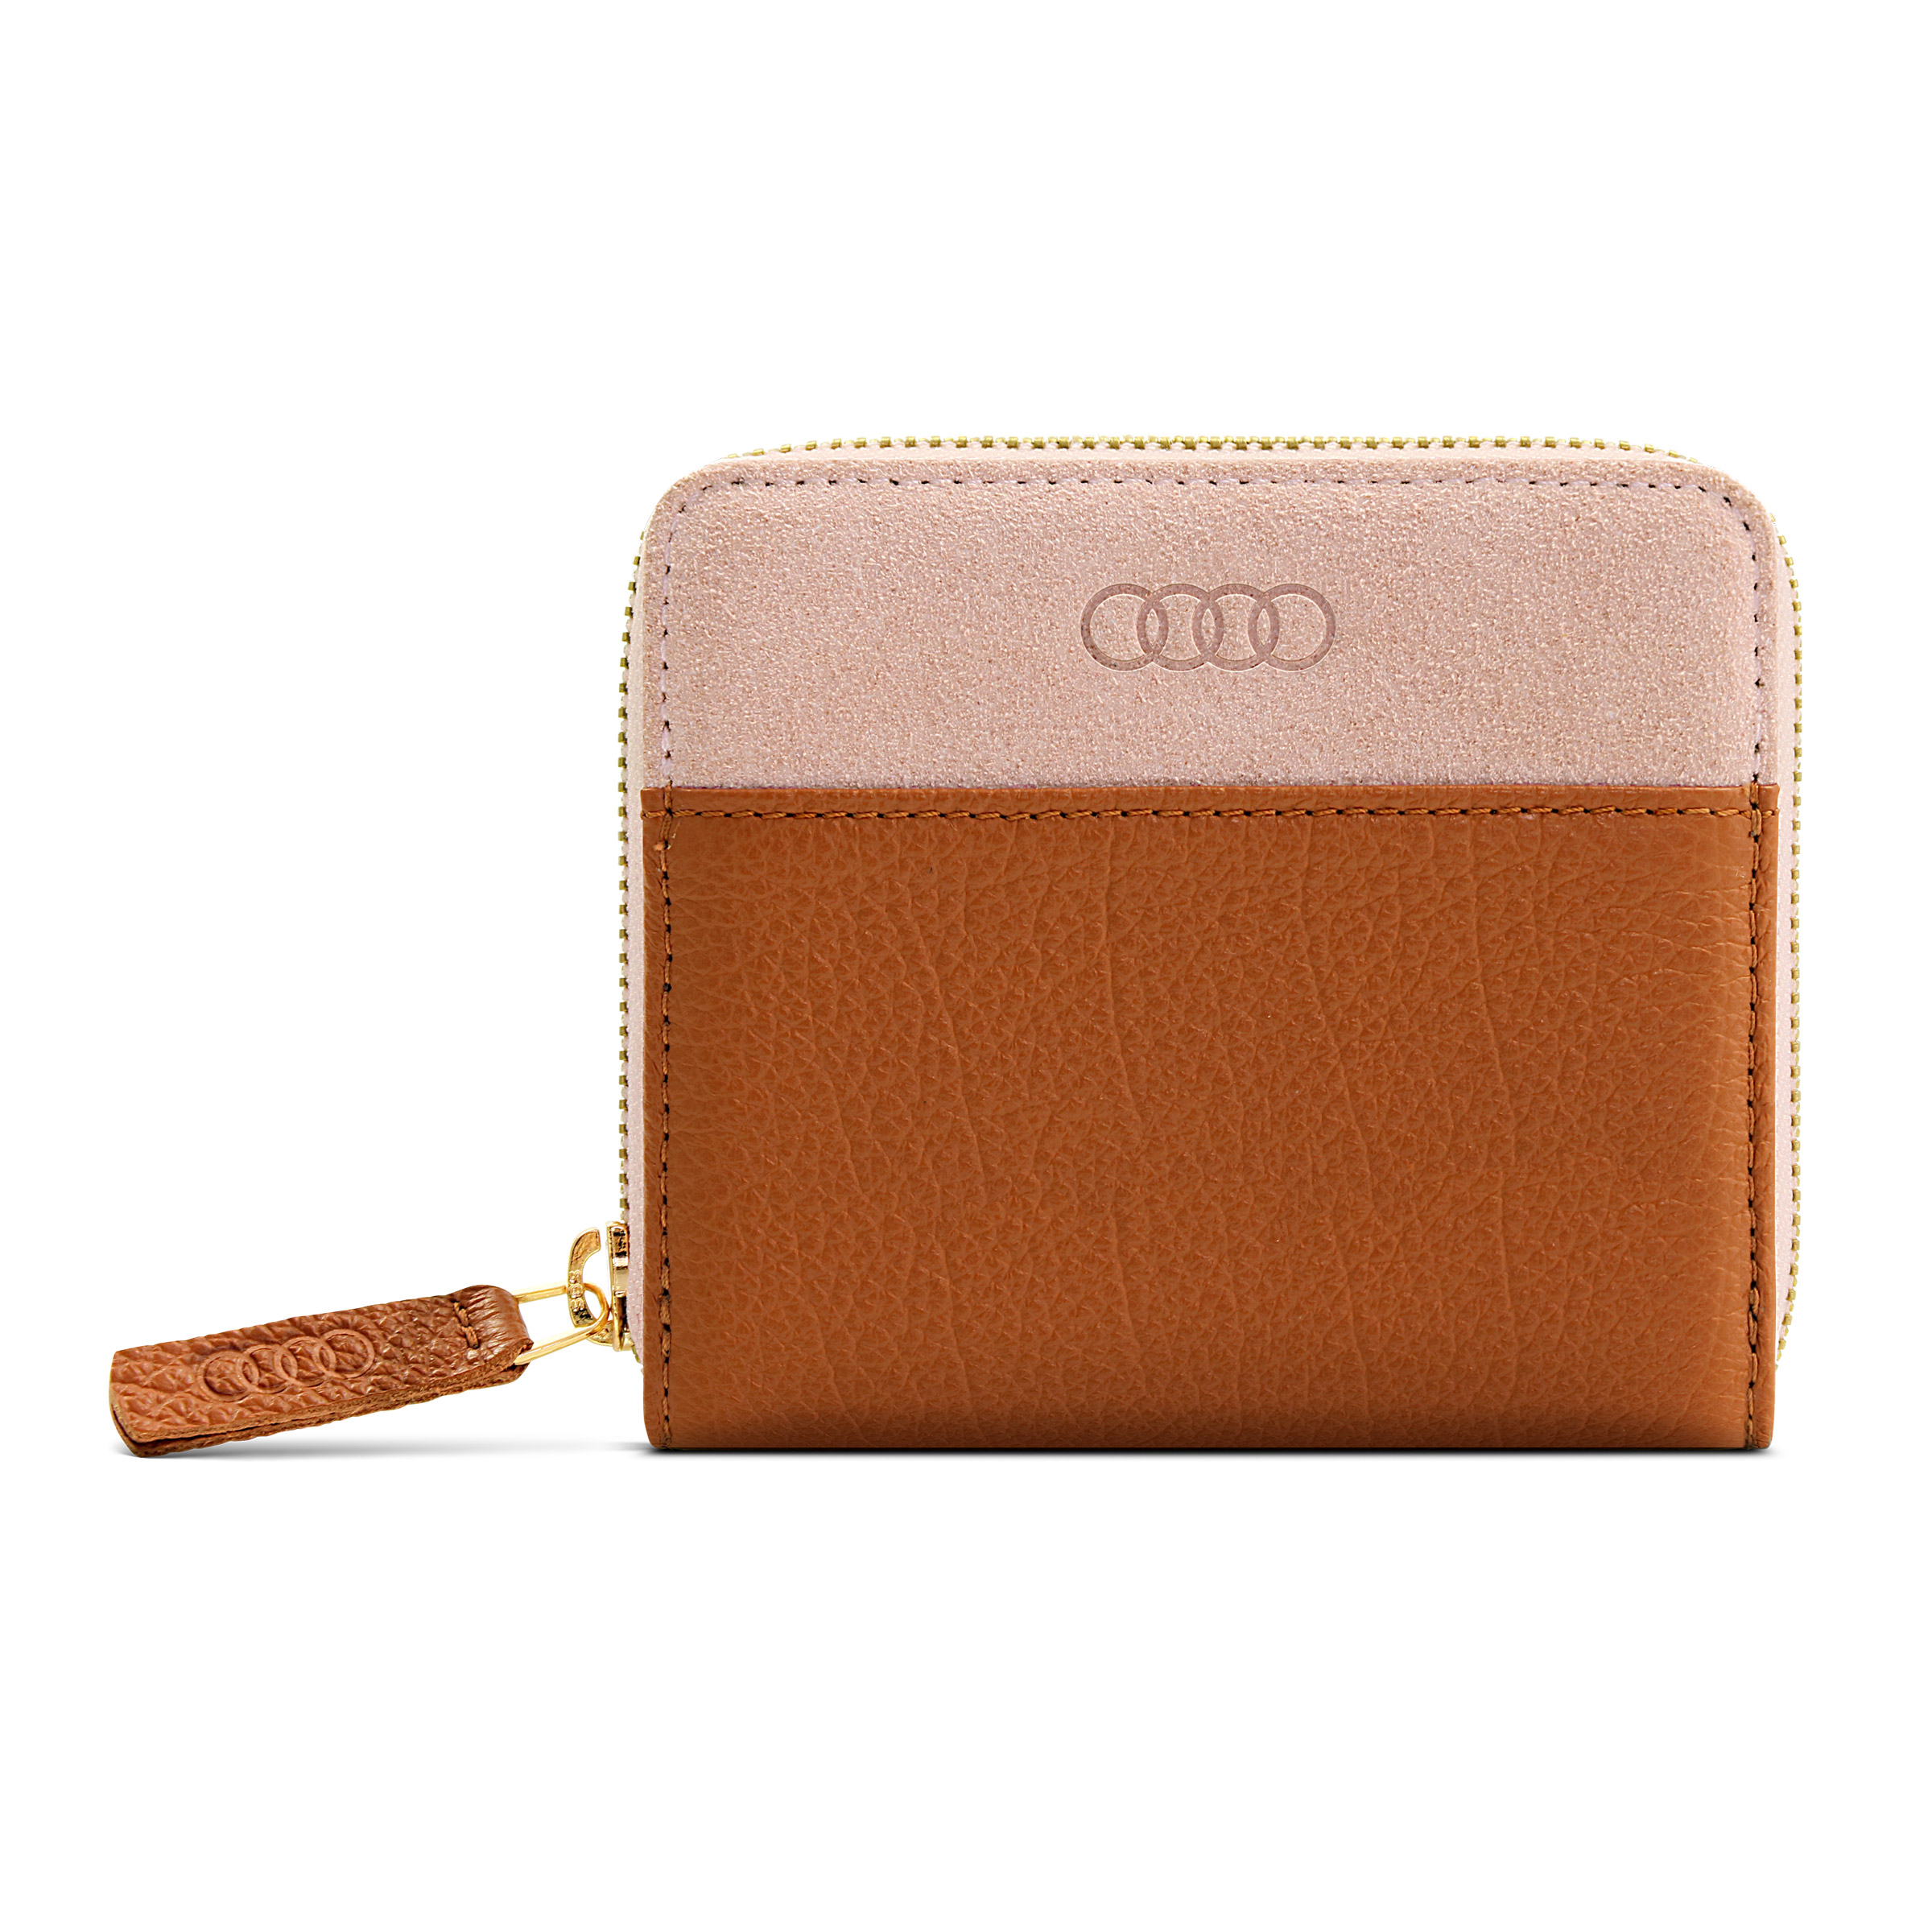 Audi Geldbörse Leder klein für Damen braun-rosé 3152101300